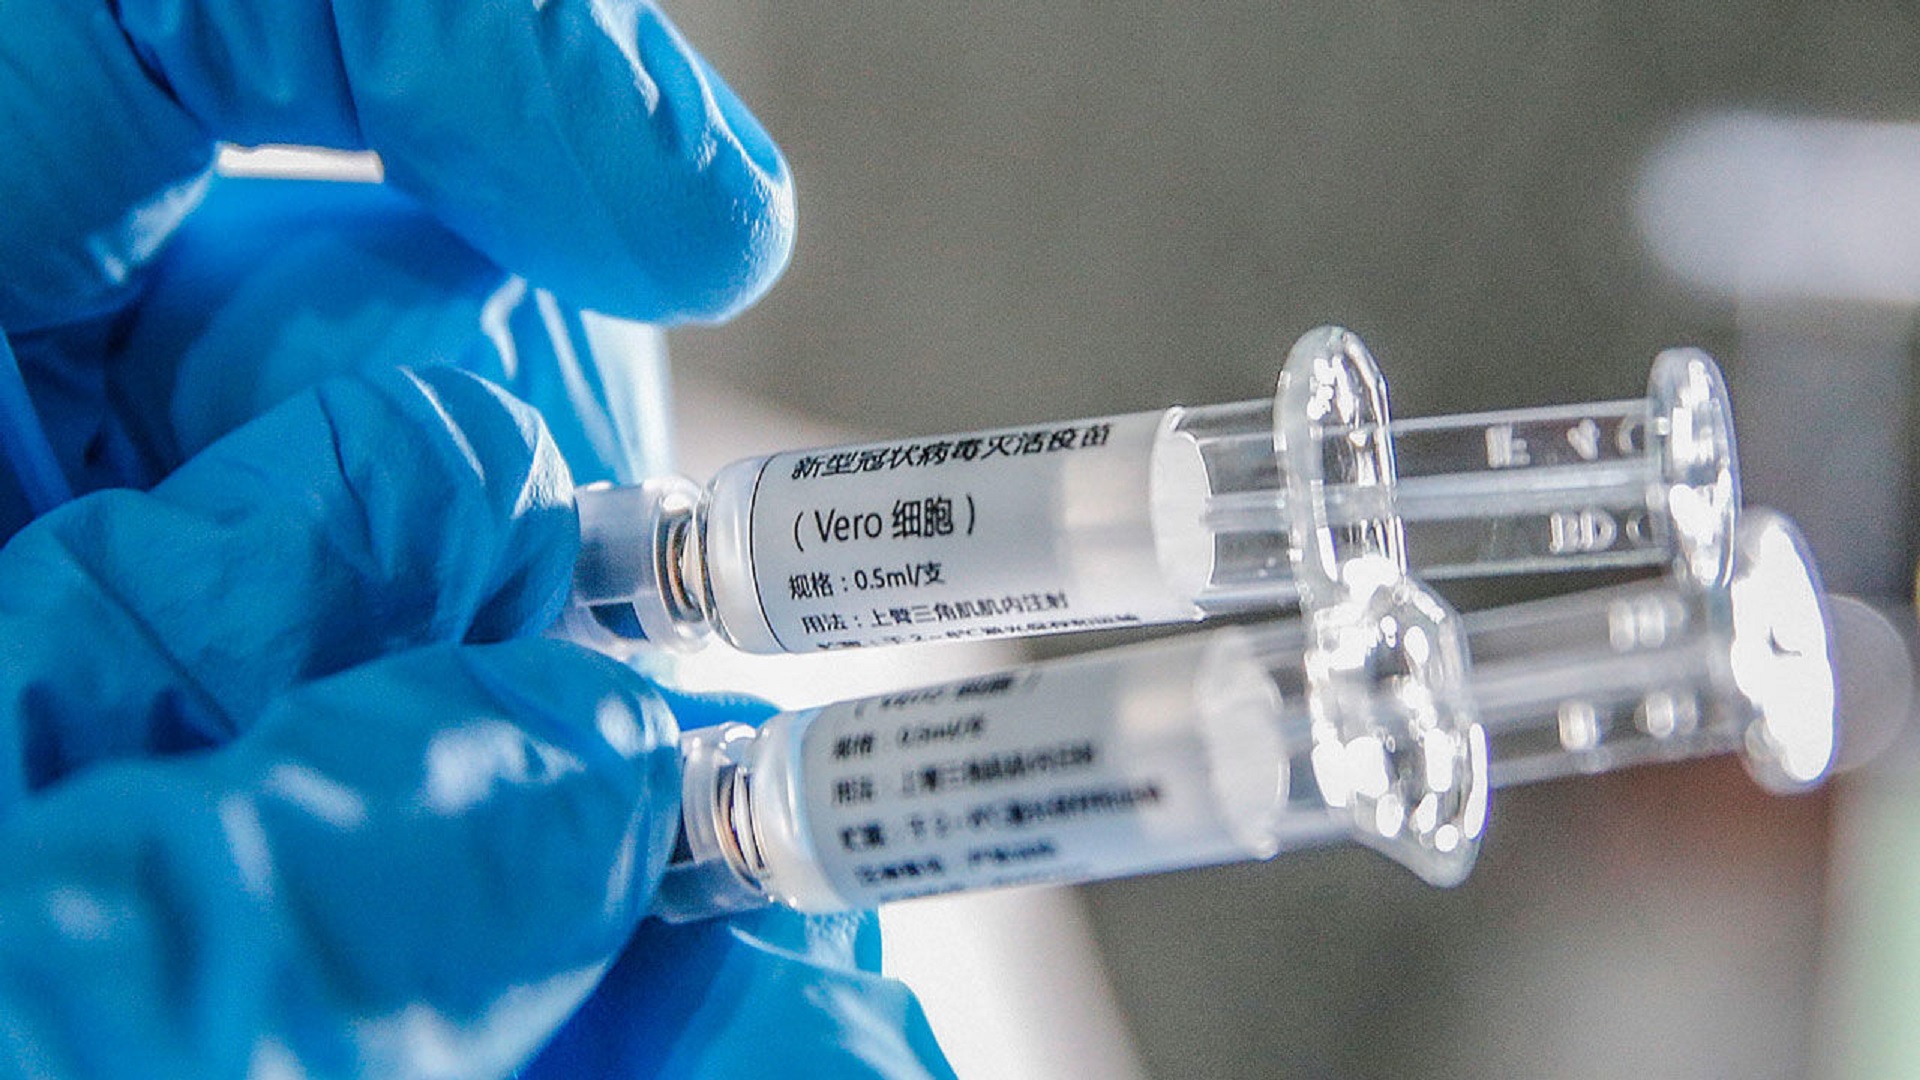 Εμβόλιο κορωνοϊός: Δύο κινεζικές εταιρίες παρουσιάζουν για πρώτη φορά εμβόλια [pics]